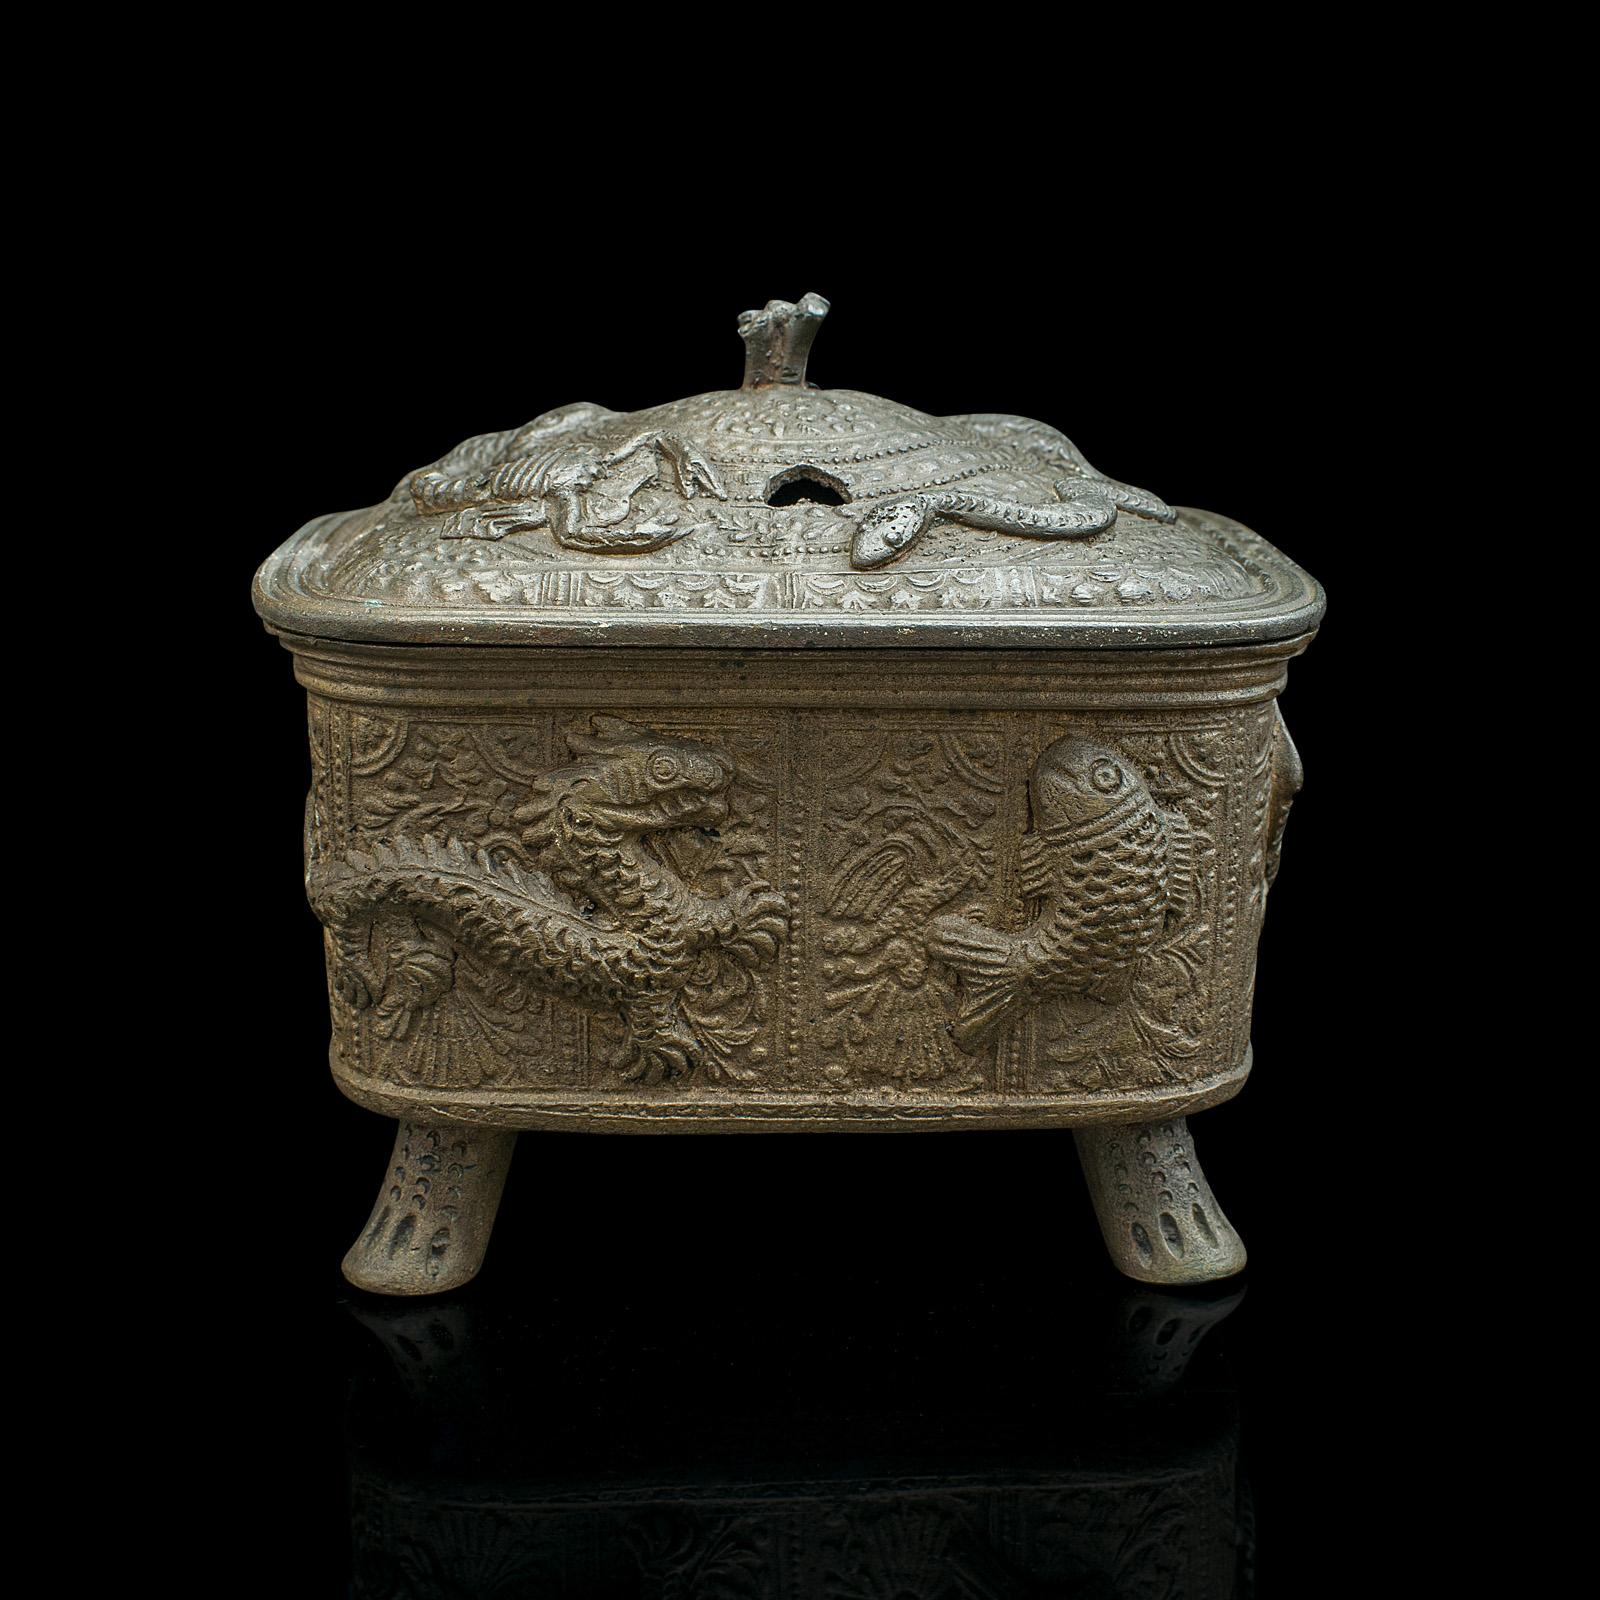 Dies ist eine antike dekorative Räuchergefäß. Ein chinesischer Weihrauchbrenner aus Bronze aus der frühen viktorianischen Zeit, um 1850.

Wunderschön verzierter und massiver Brenner mit ansprechender Oberfläche
Zeigt eine wünschenswerte gealterte